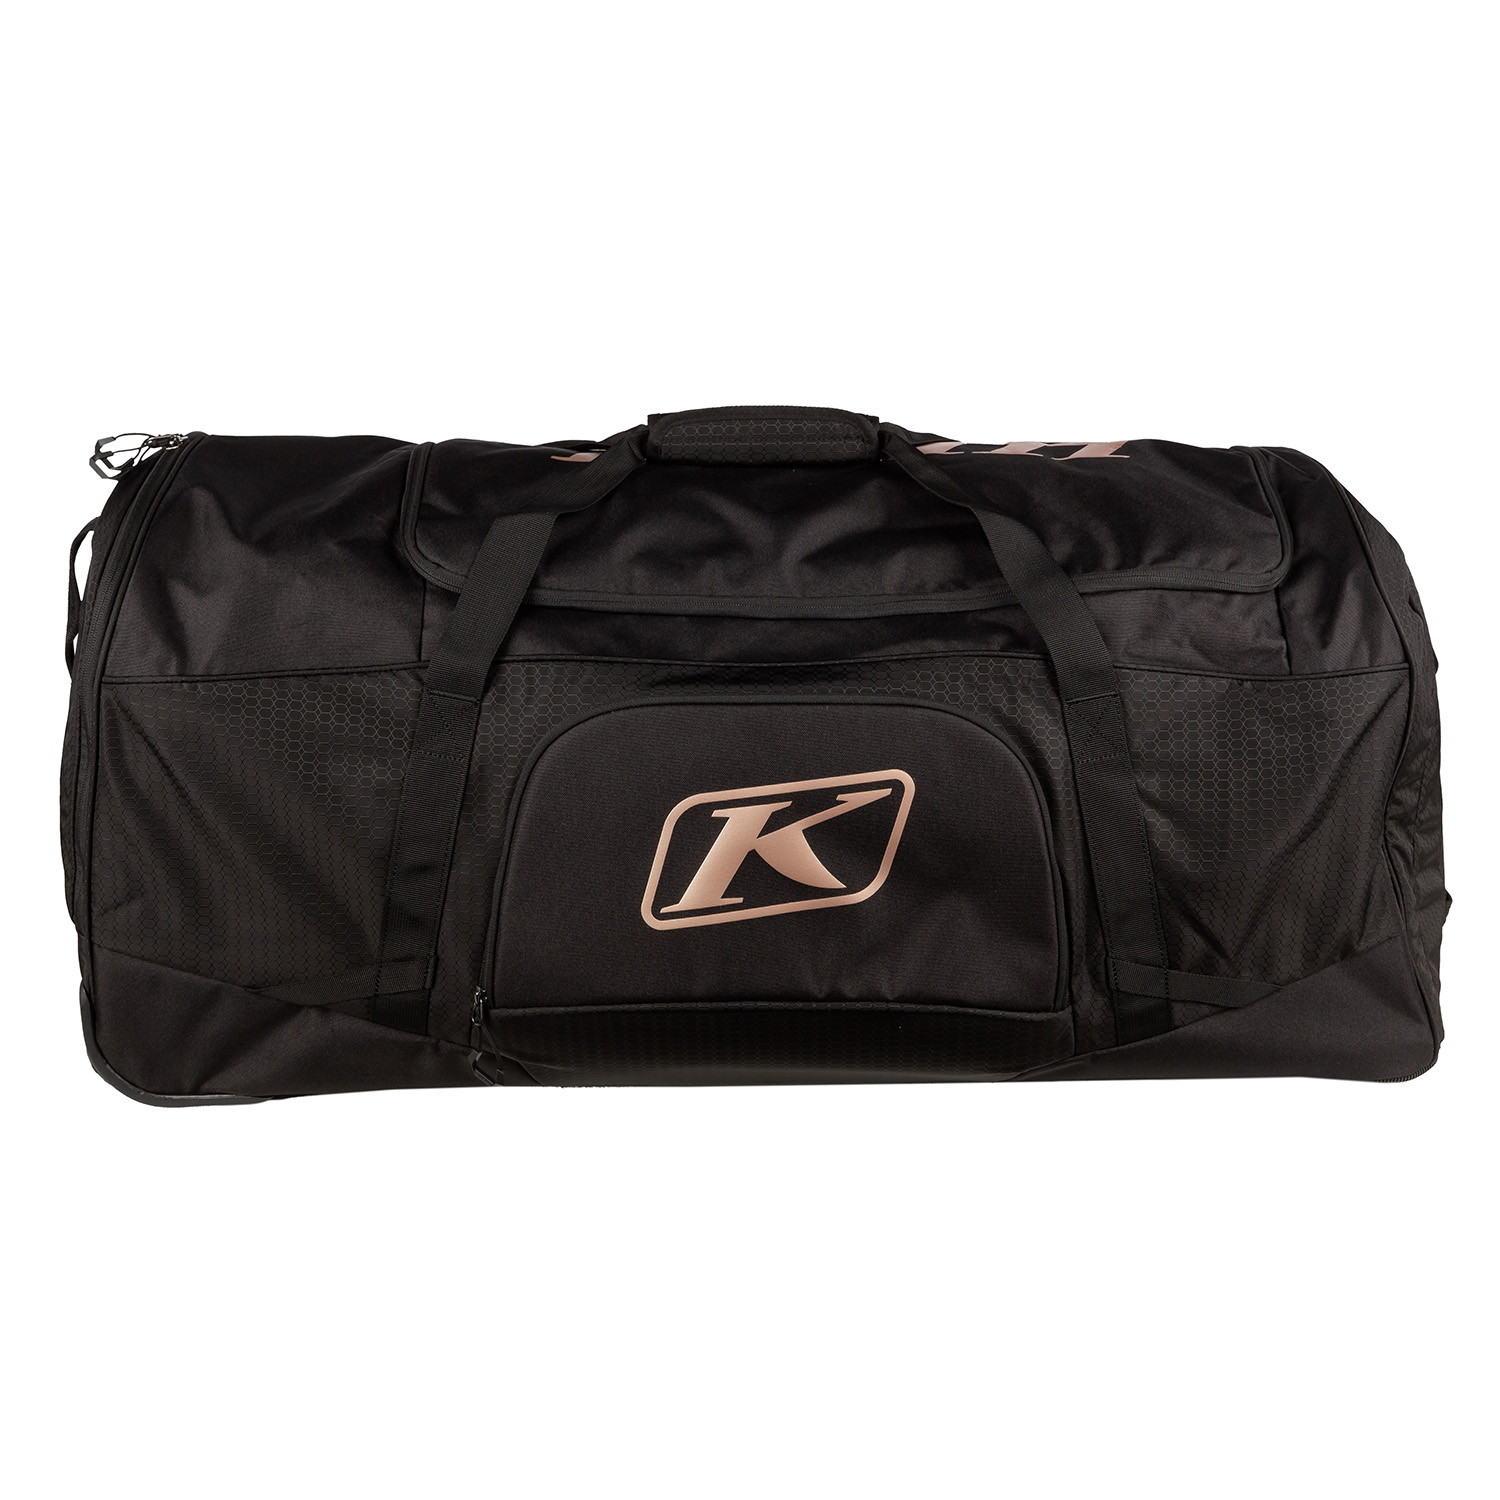 Klim Kodiak Bag | Bags, Gear bag, Online bags